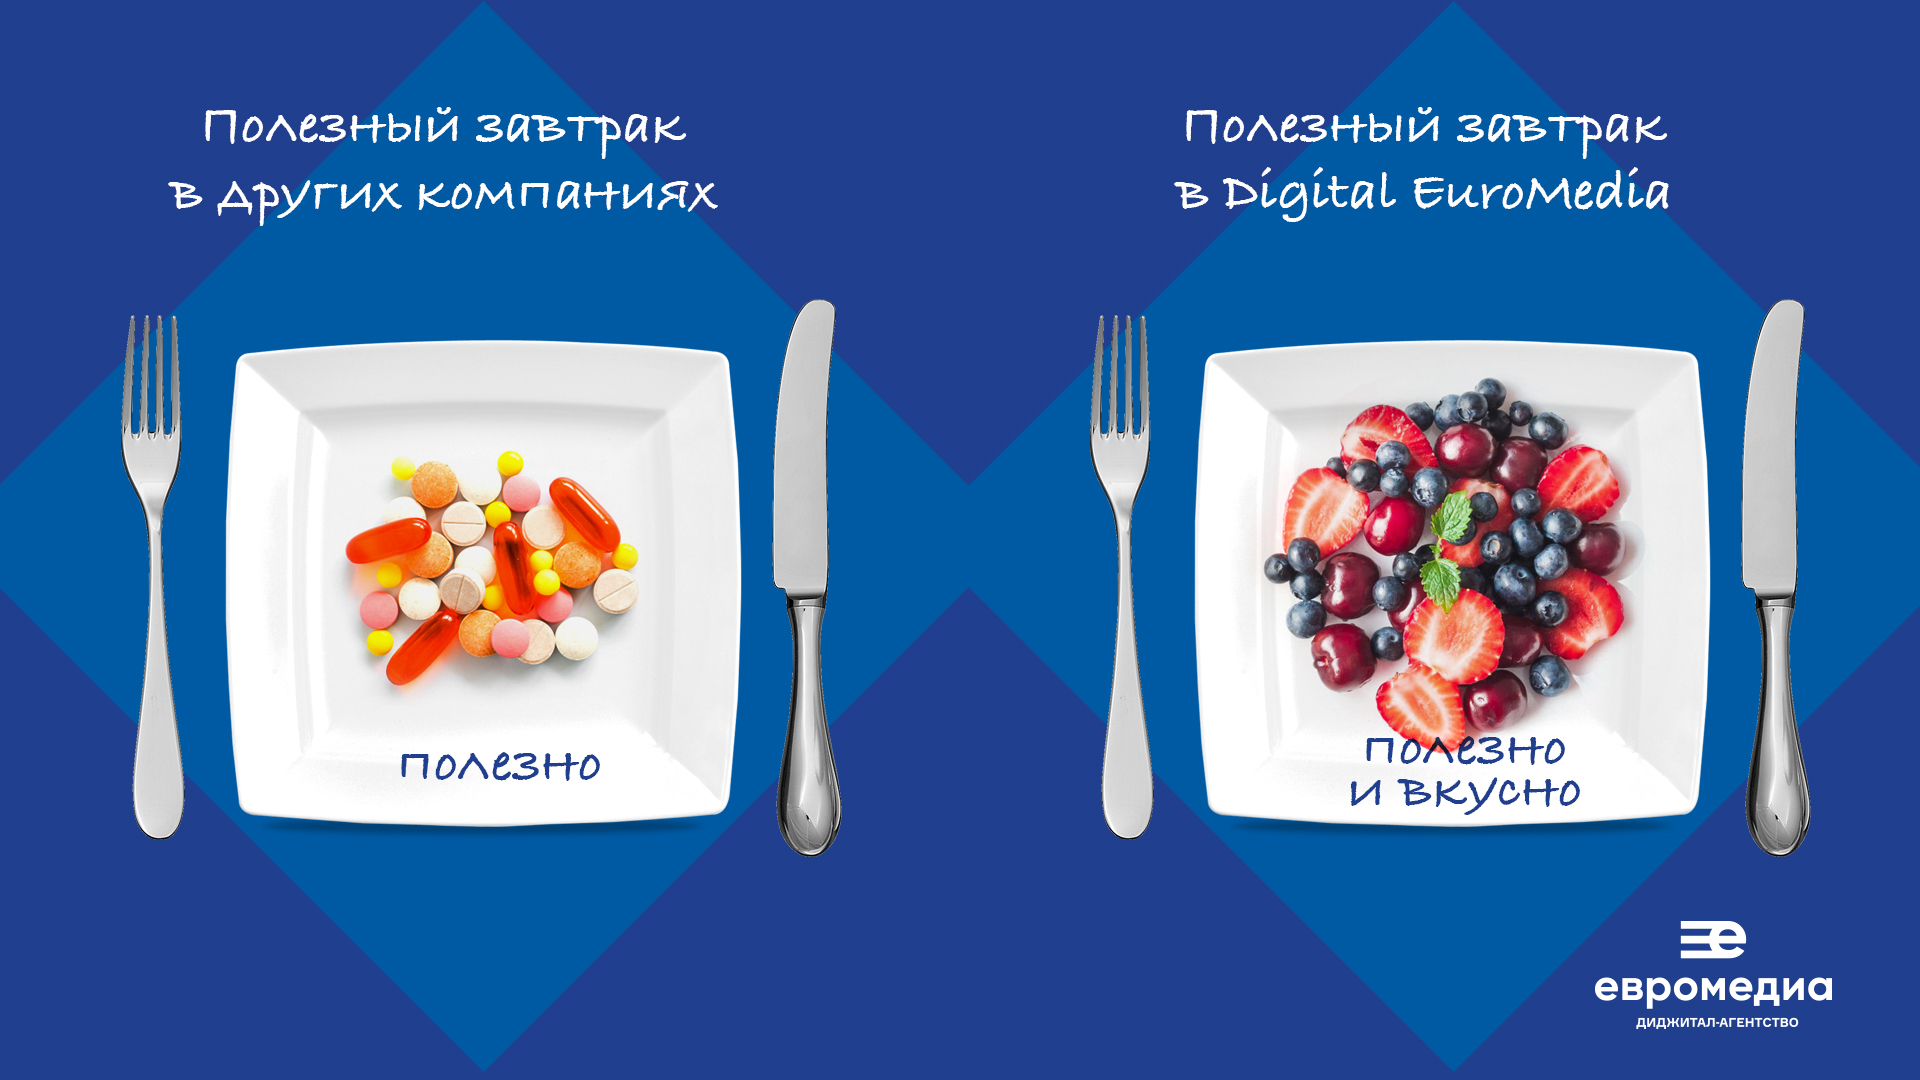 МИД «ЕвроМедиа» проведет всероссийский «бизнес-завтрак» для строительной и сельскохозяйственной отрасли 